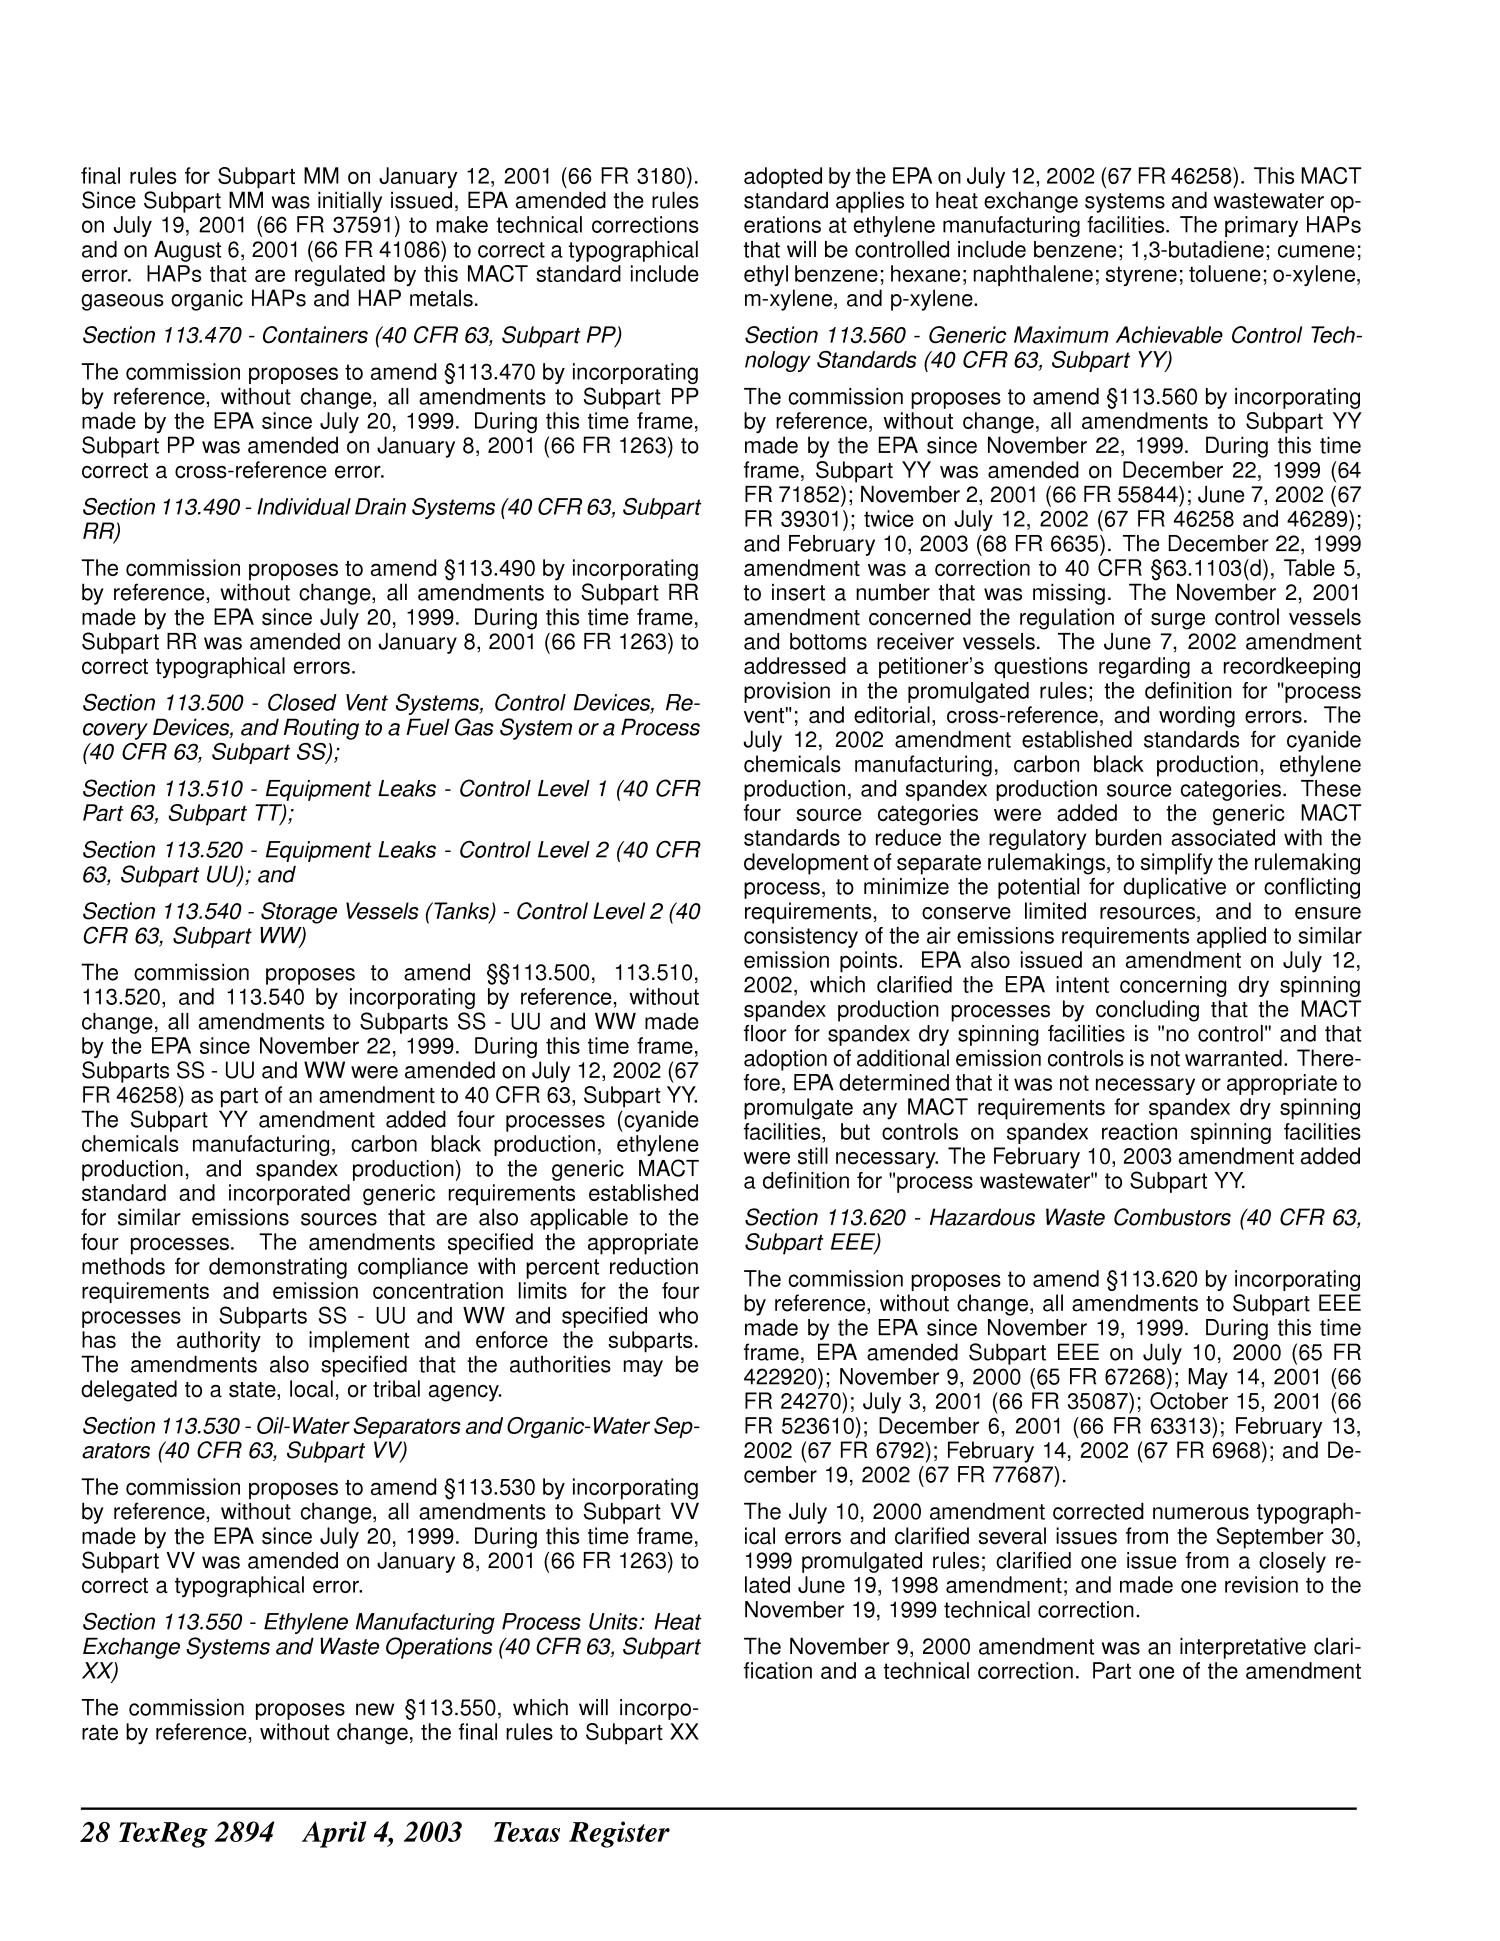 Texas Register, Volume 28, Number 14, Pages 2821-2988, April 4, 2003
                                                
                                                    2894
                                                